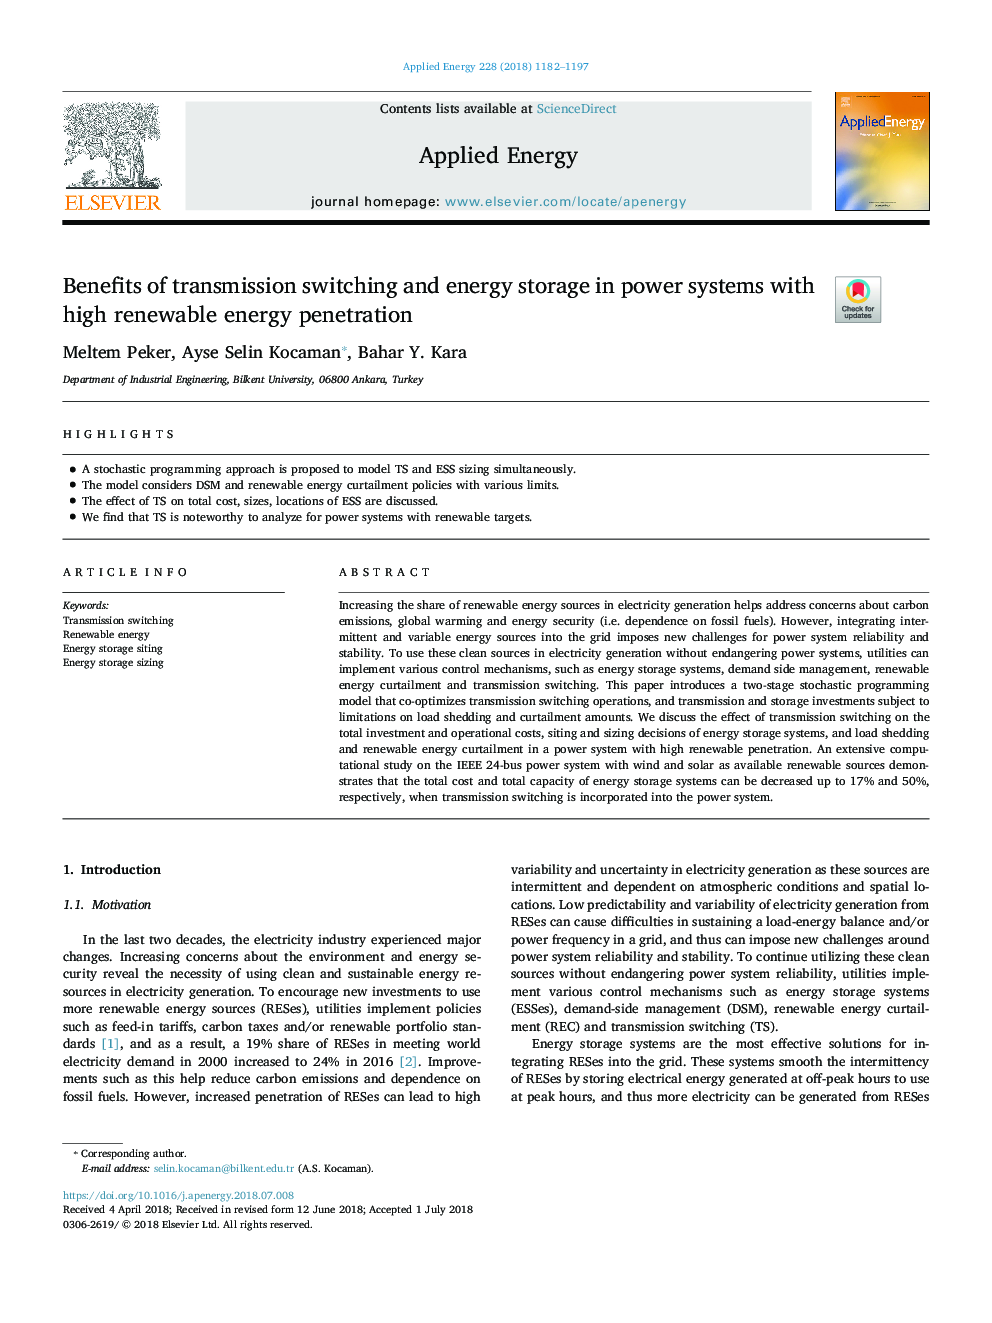 مزایای سوئیچینگ انتقال و ذخیره انرژی در سیستم های قدرت با نفوذ انرژی تجدید پذیر بالا 